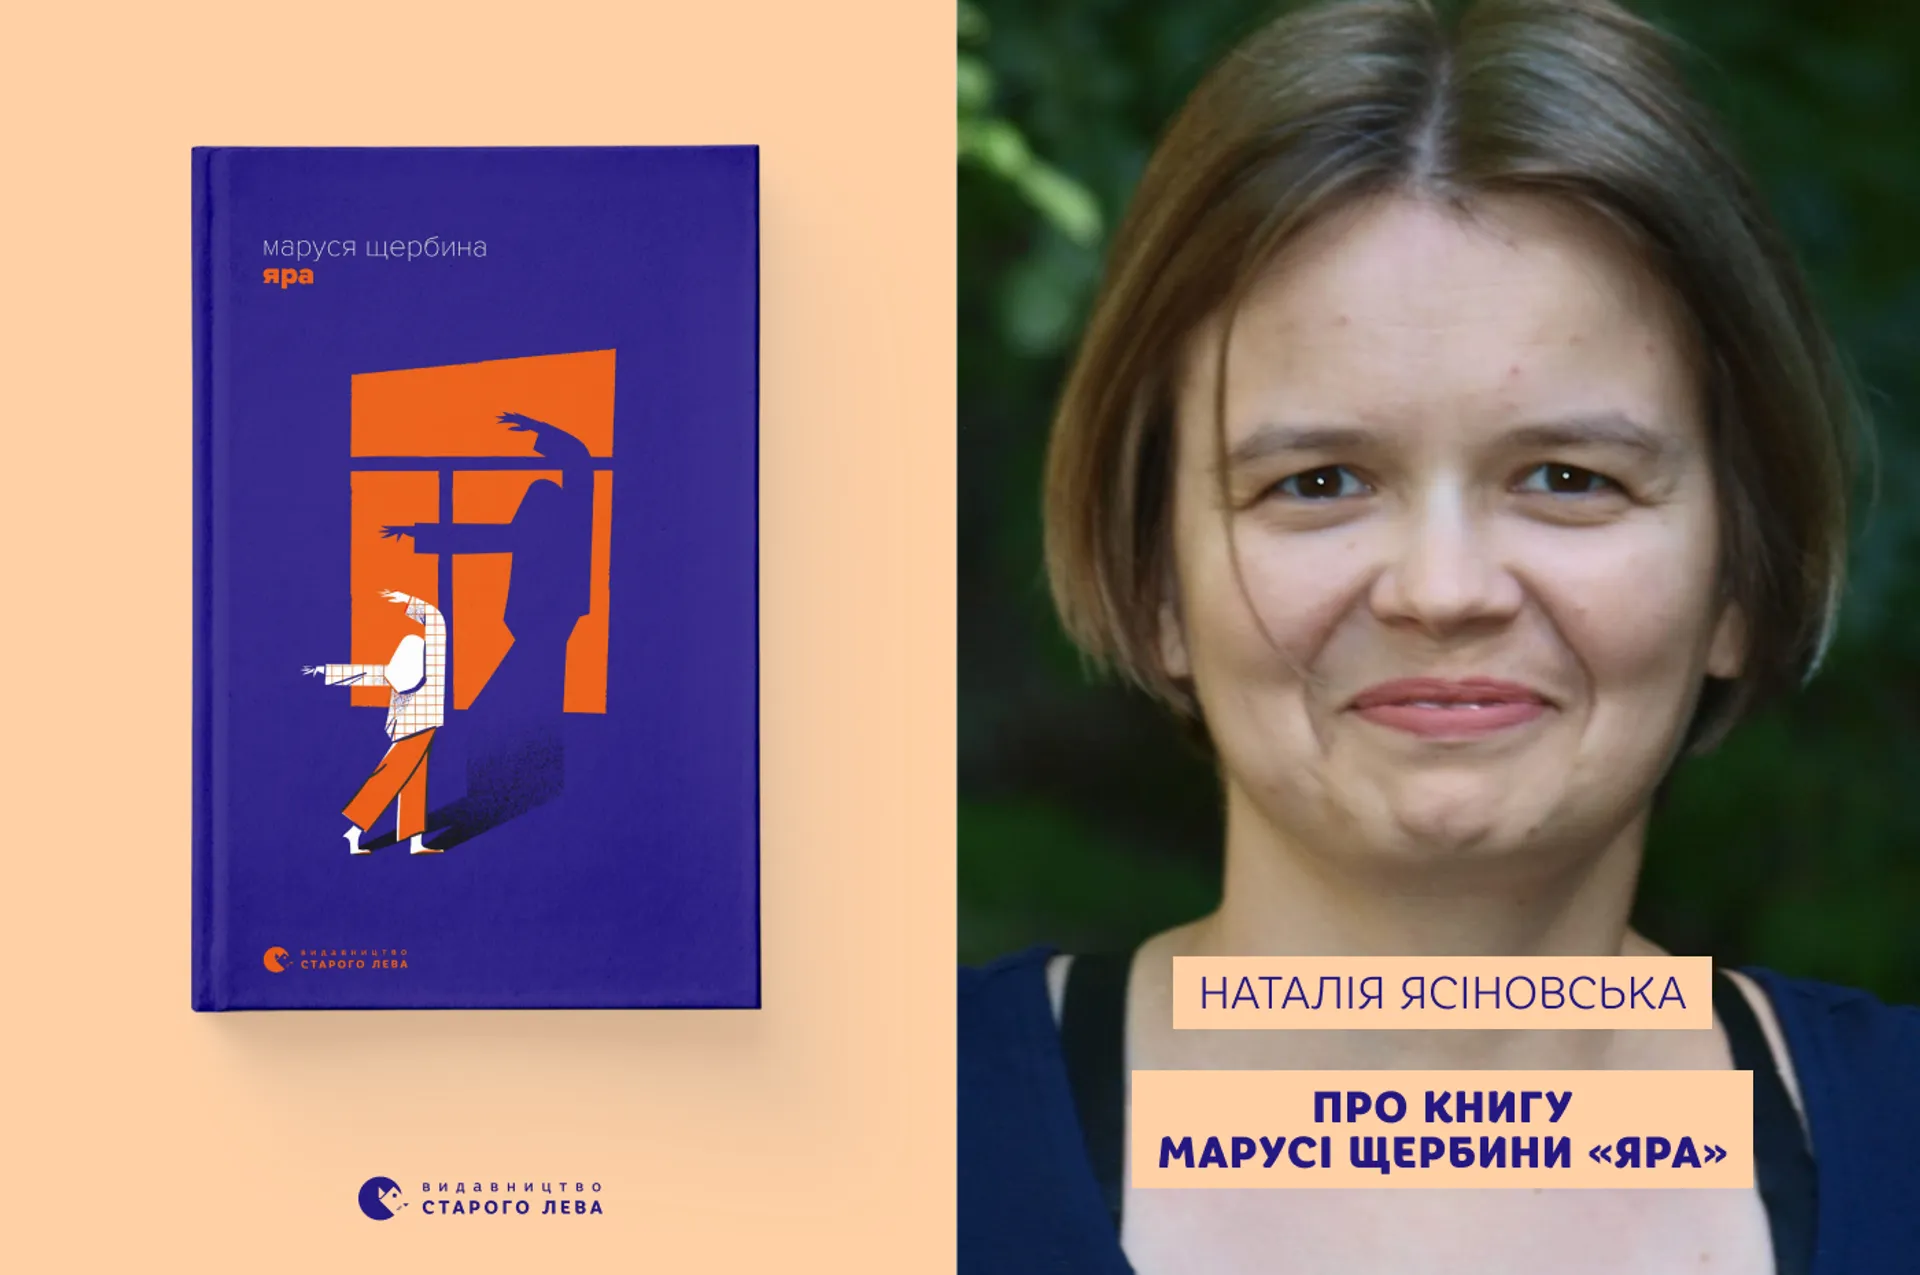 Наталя Ясіновська про книгу Марусі Щербини «Яра»